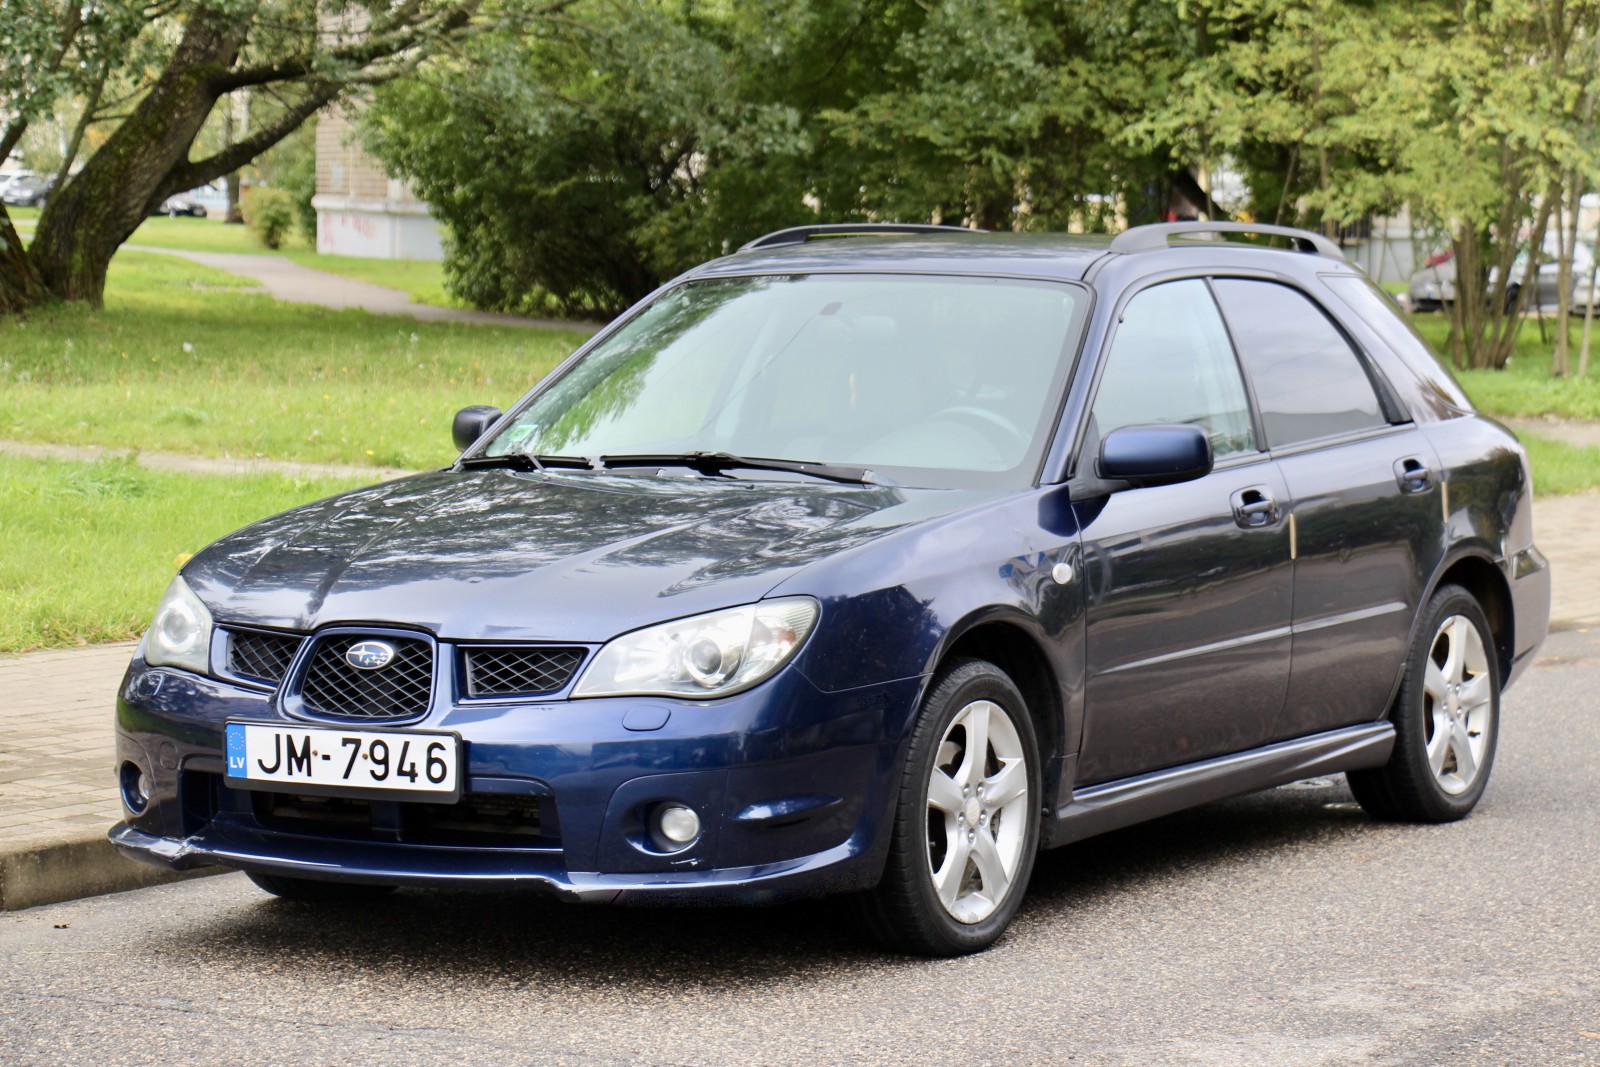 Pārdod Subaru Impreza 2006 gada, Dzinējs 2.0l Benzīns